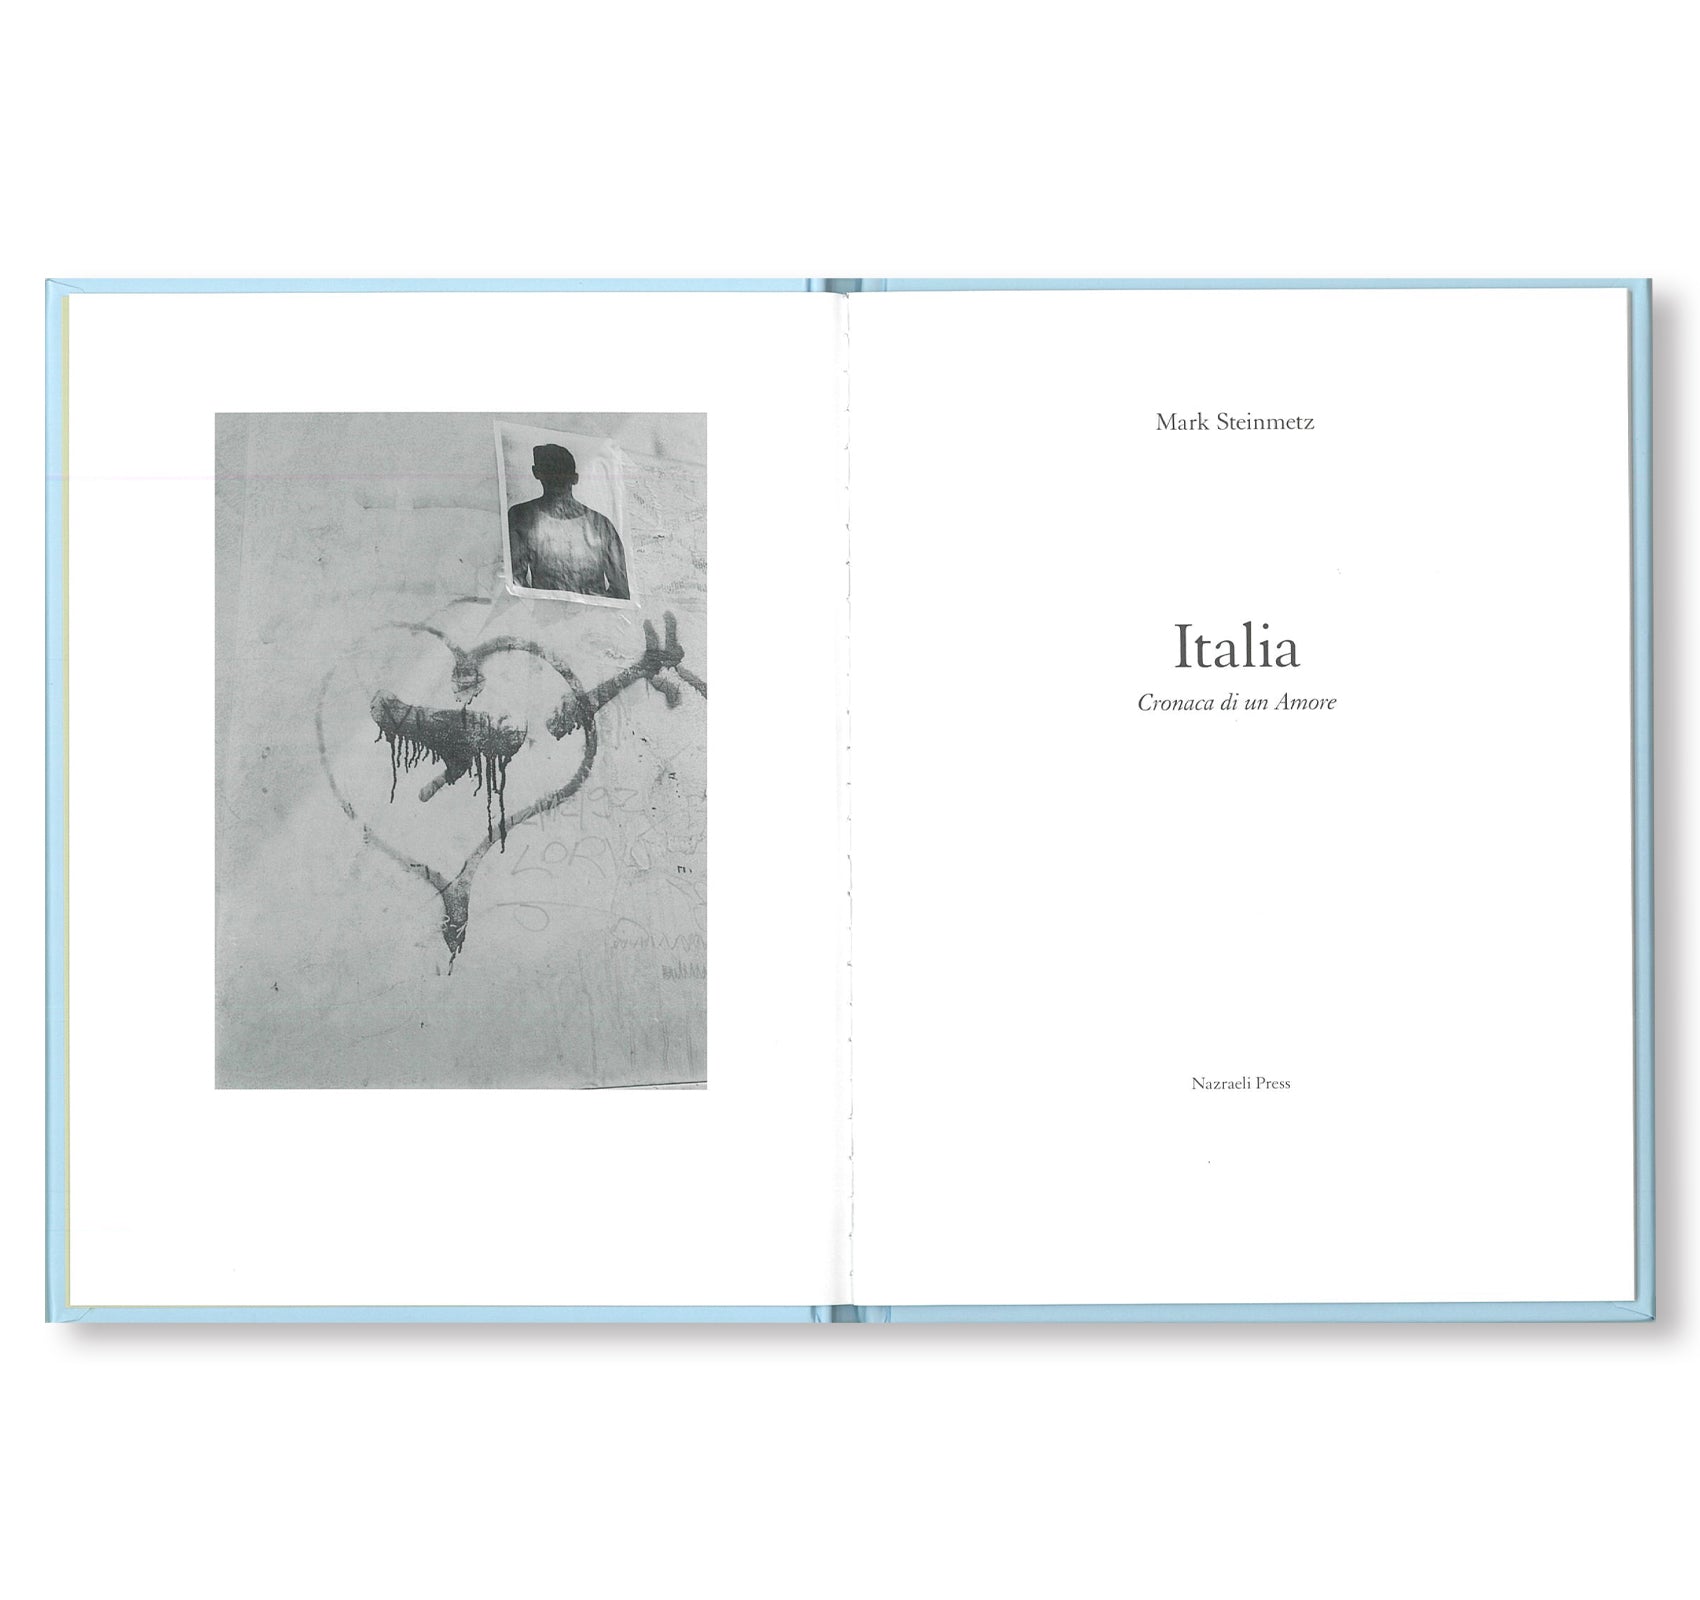 ONE PICTURE BOOK #64: ITALIA: CRONACA DI UN AMORE by Mark Steinmetz